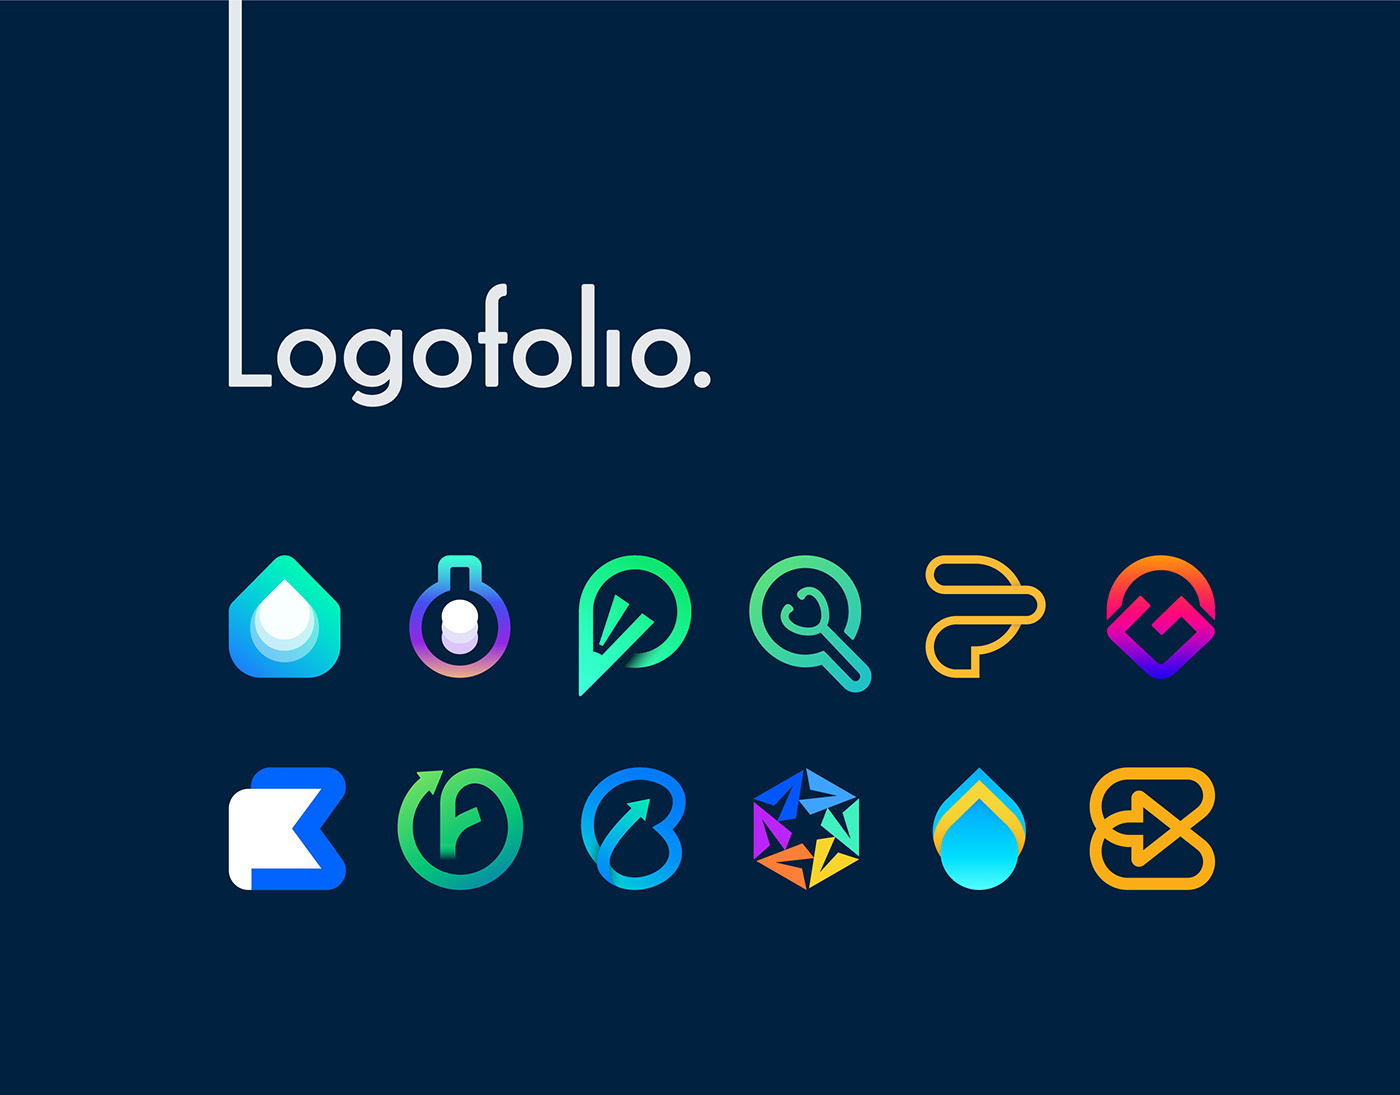 App logo Colorful Logo logo Logo Design logos Logotipo Logotype minimalist Modern Logo professional logos